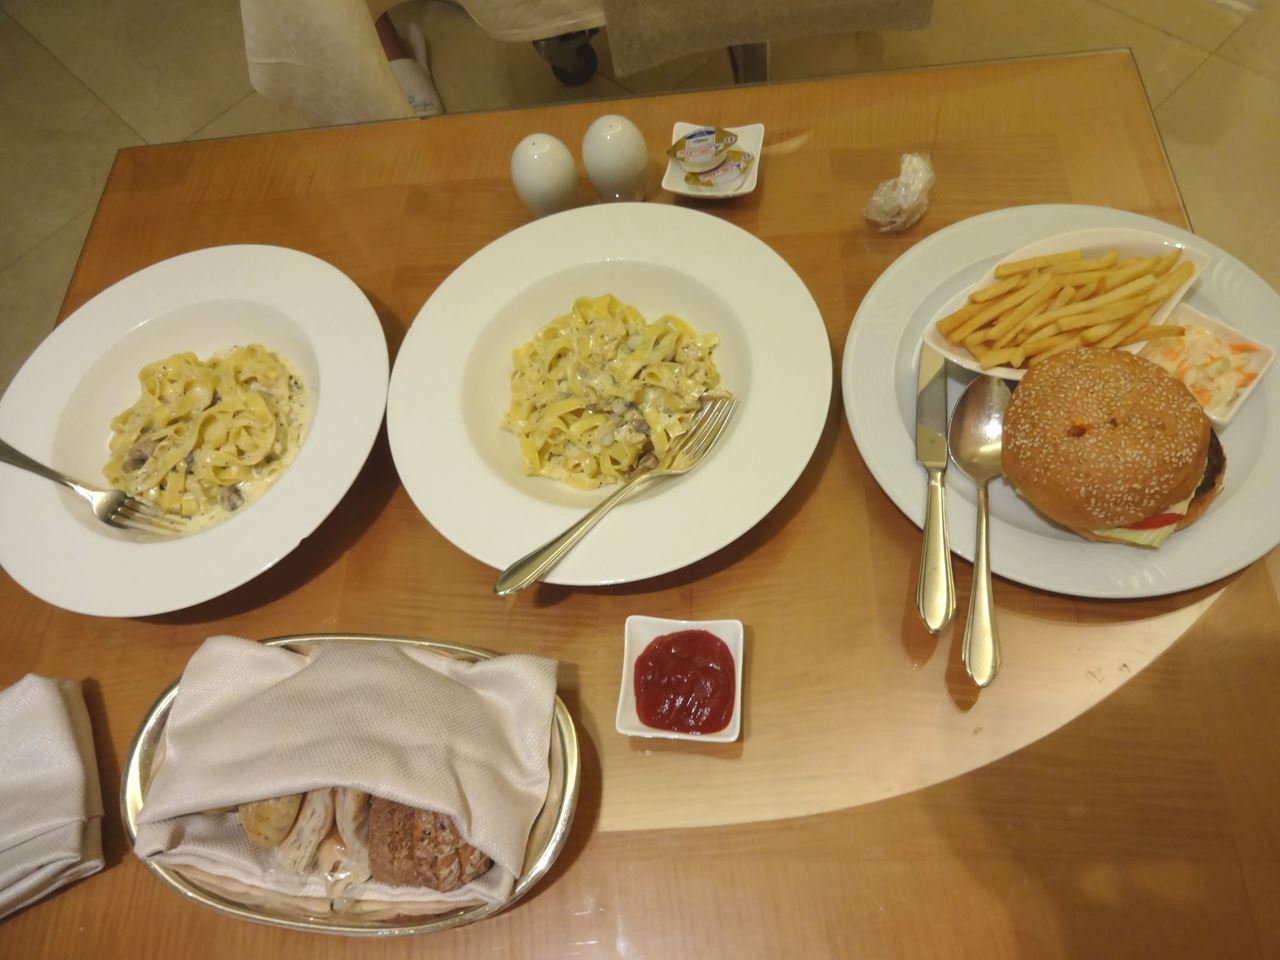 عشاء من قائمة خدمة الغرف في فندق المارينا